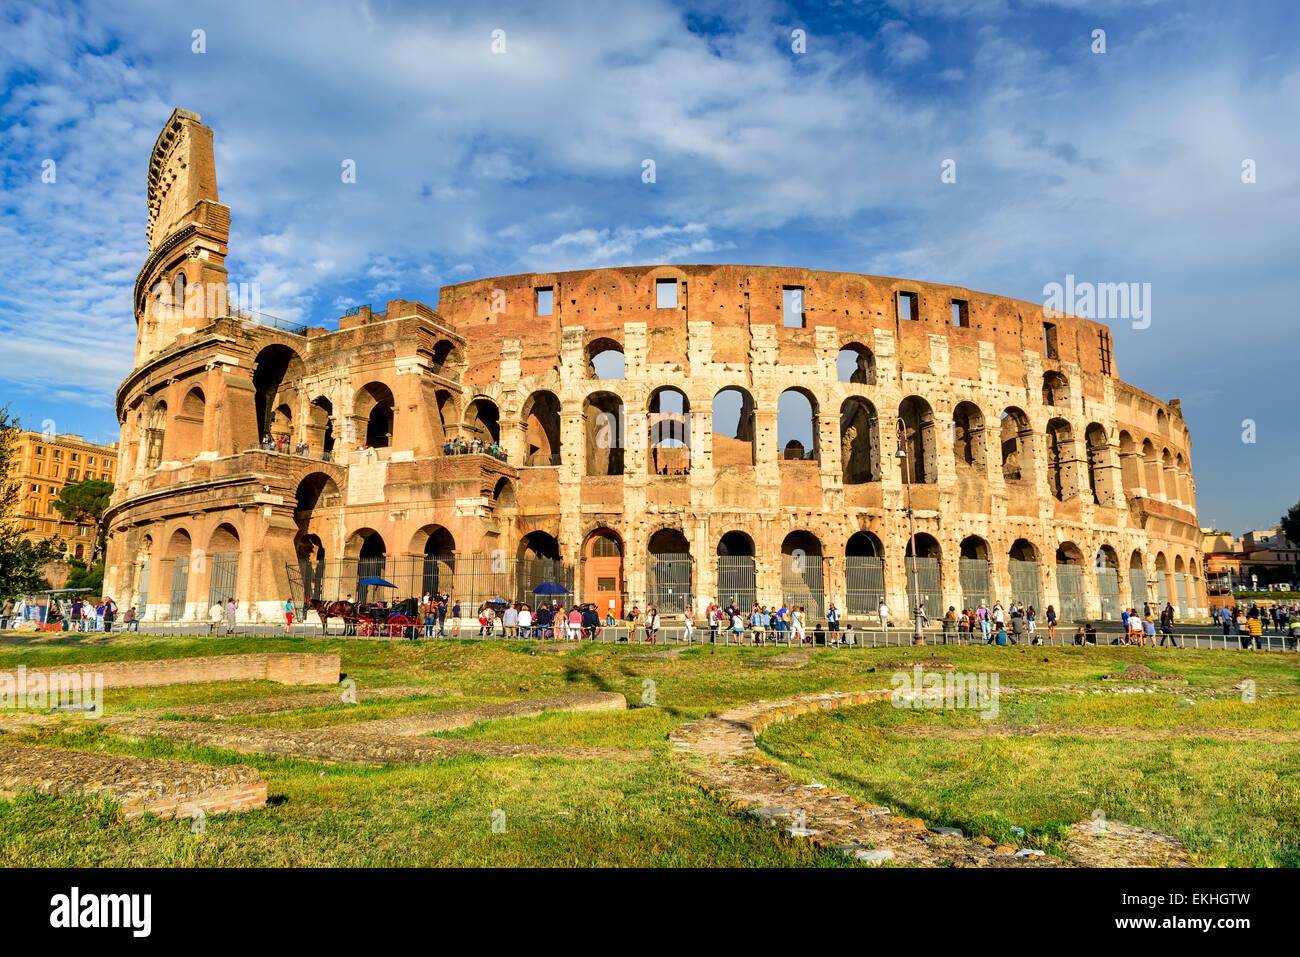 Kolosseum spektakuläre Aussicht. Kolosseum elliptisch größte Amphitheater des römischen Reiches Hochkultur in Rom, Italien. Stockfoto